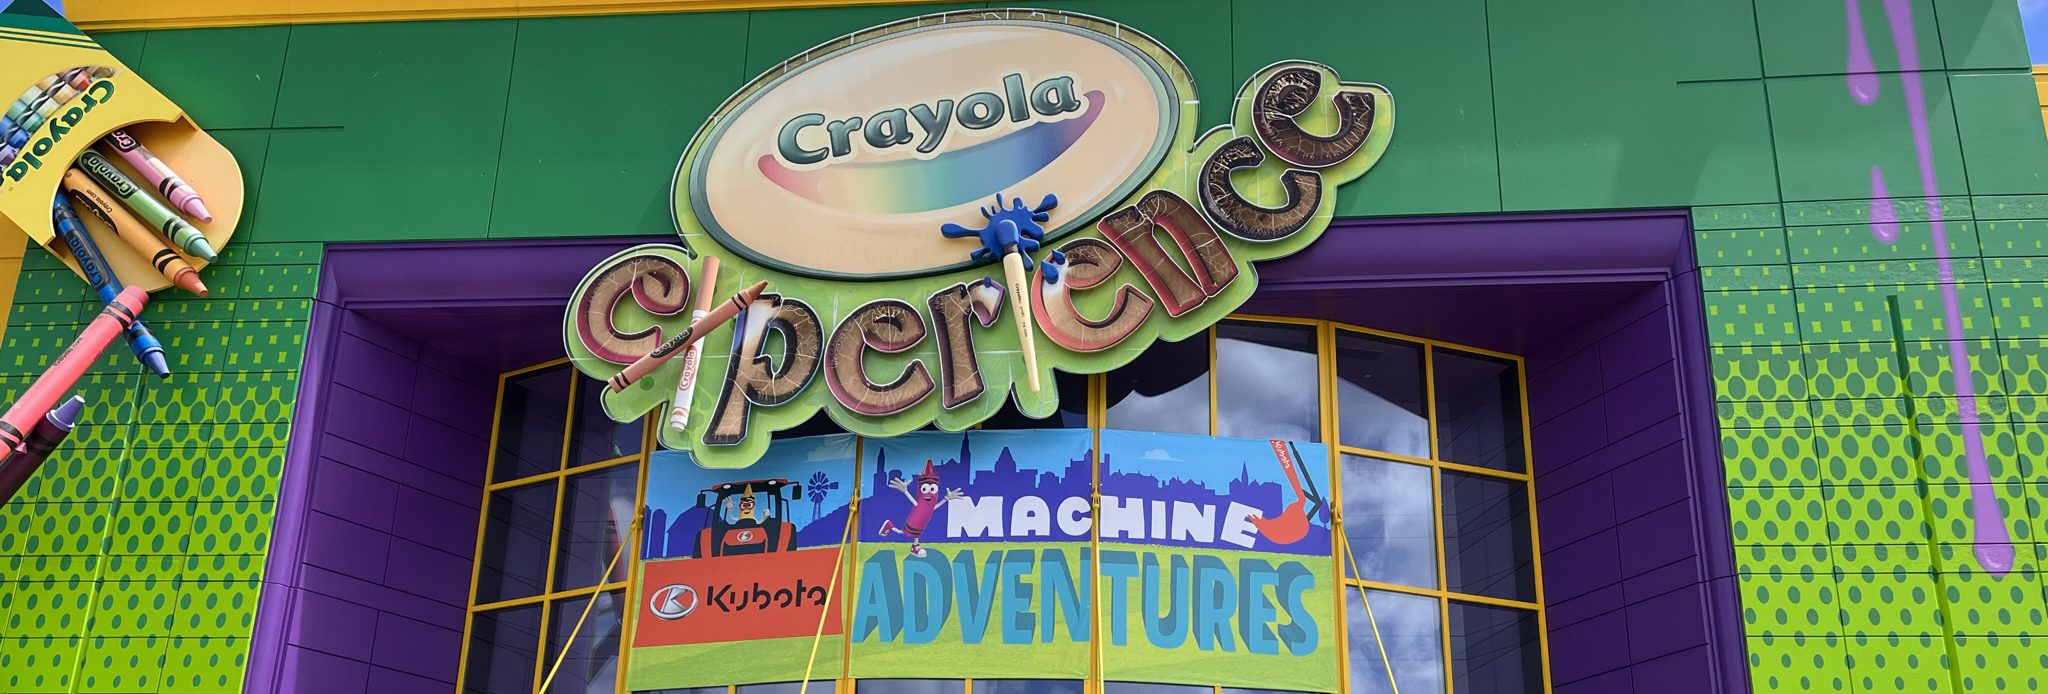 Crayola Experience Orlando, FL